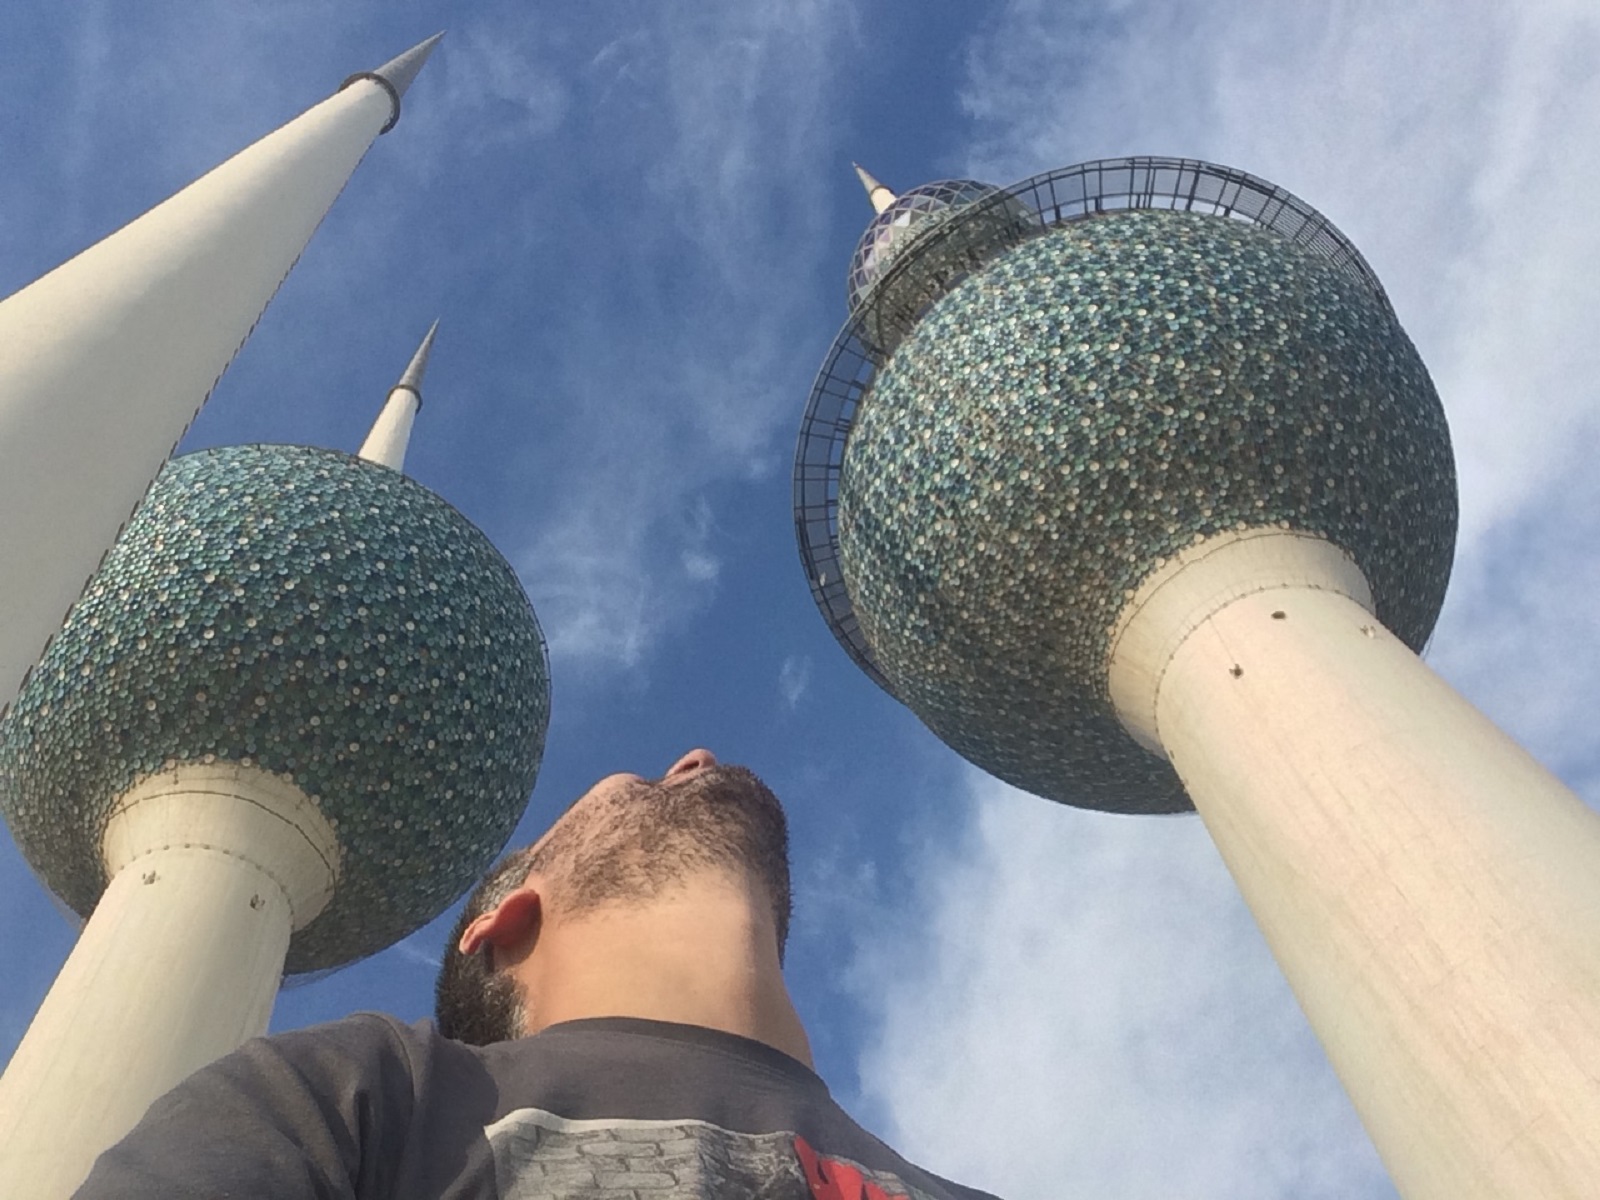 Kuvajt – cestovateľské rady, tipy a itinerár